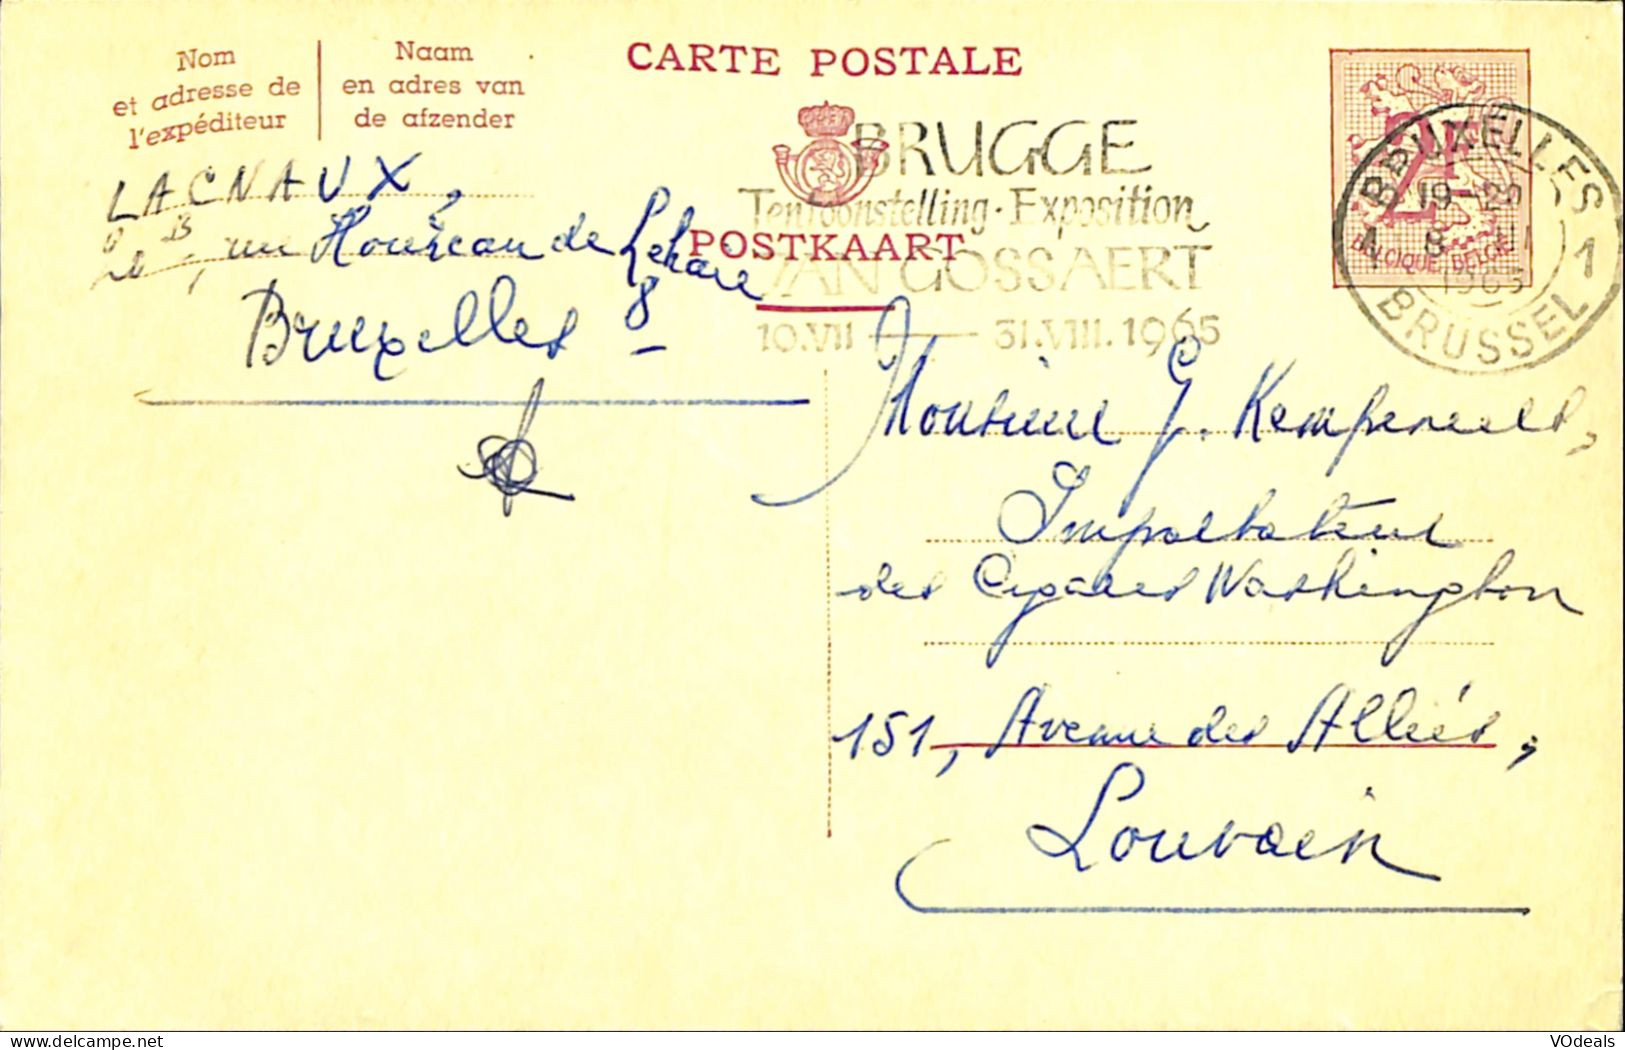 Belgique - Carte Postale - Entier Postal - 1965 - Bruxelles à Louvain - 2 Francs - Postcards 1951-..